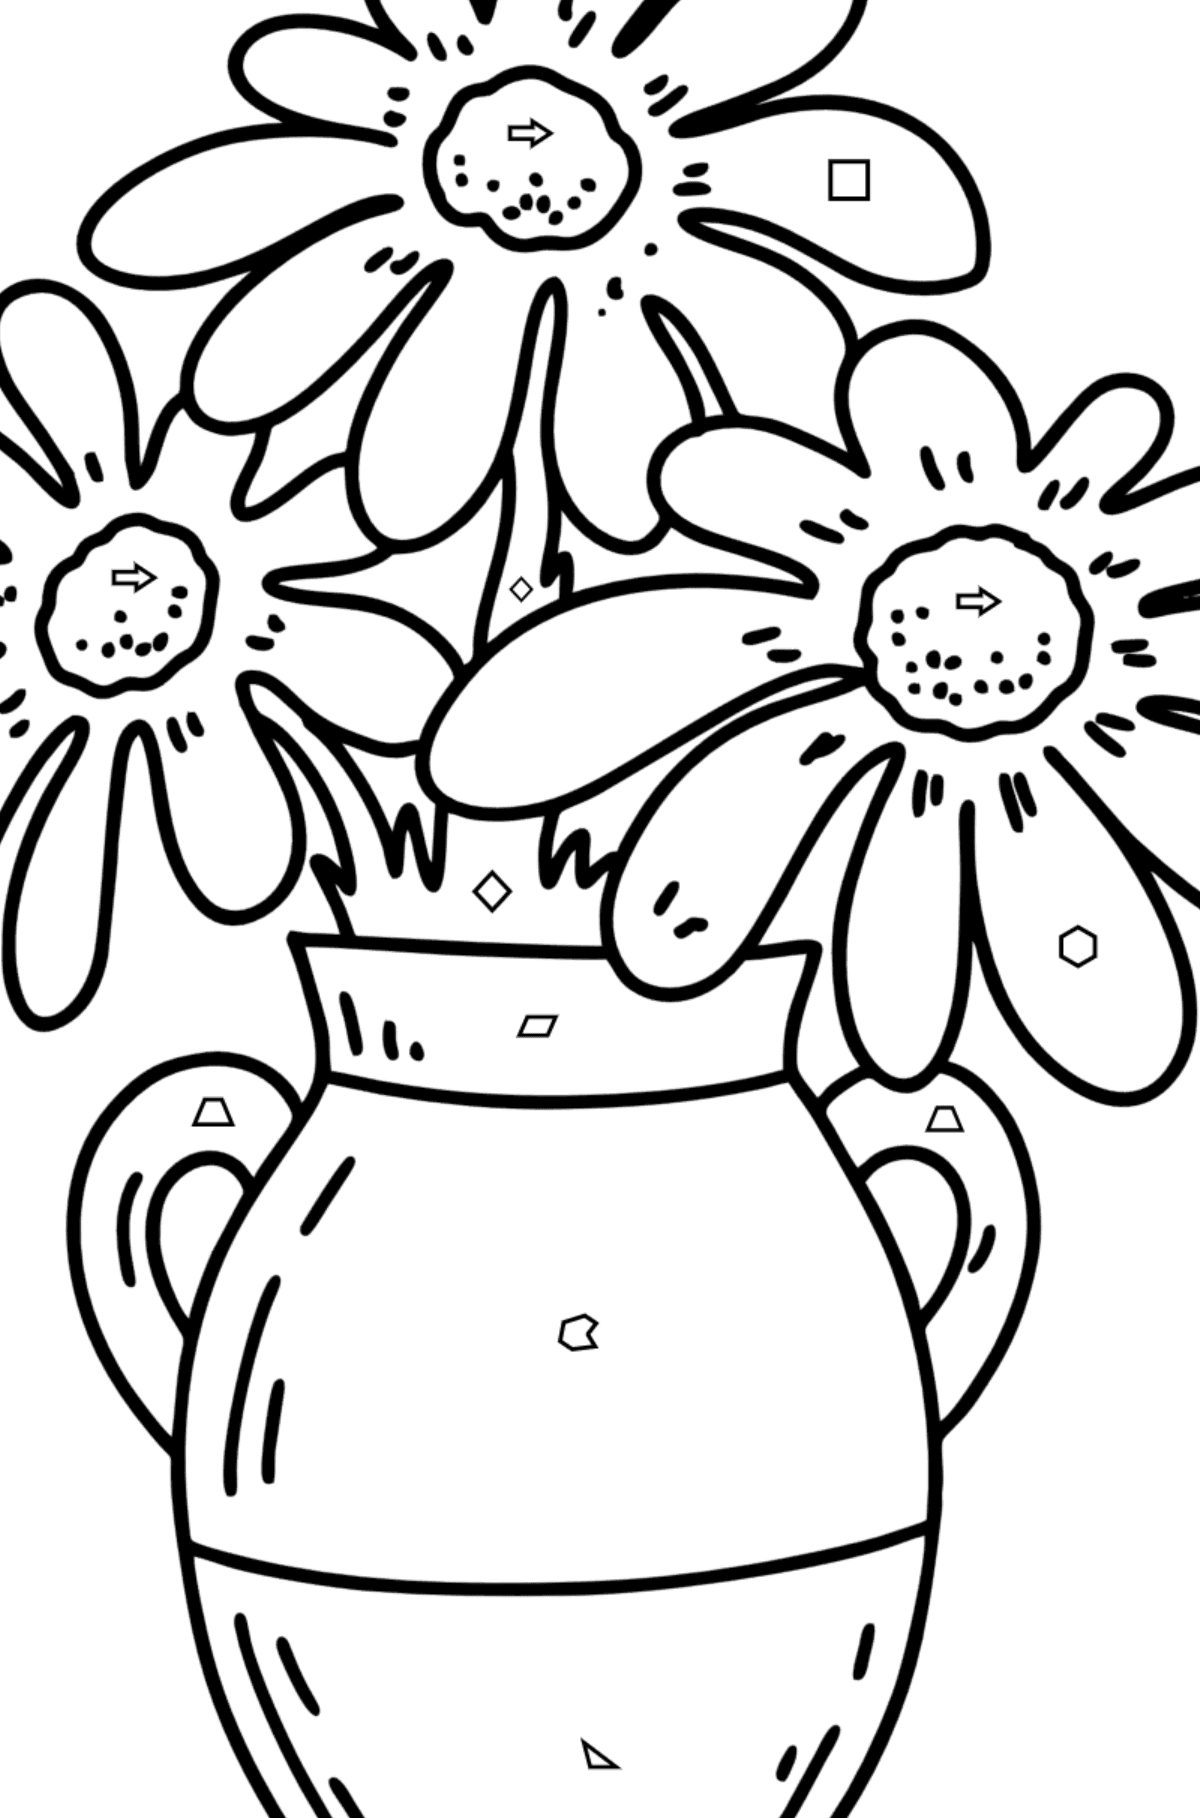 Desenho para colorir de verão - flores em um vaso - Colorir por Formas Geométricas para Crianças